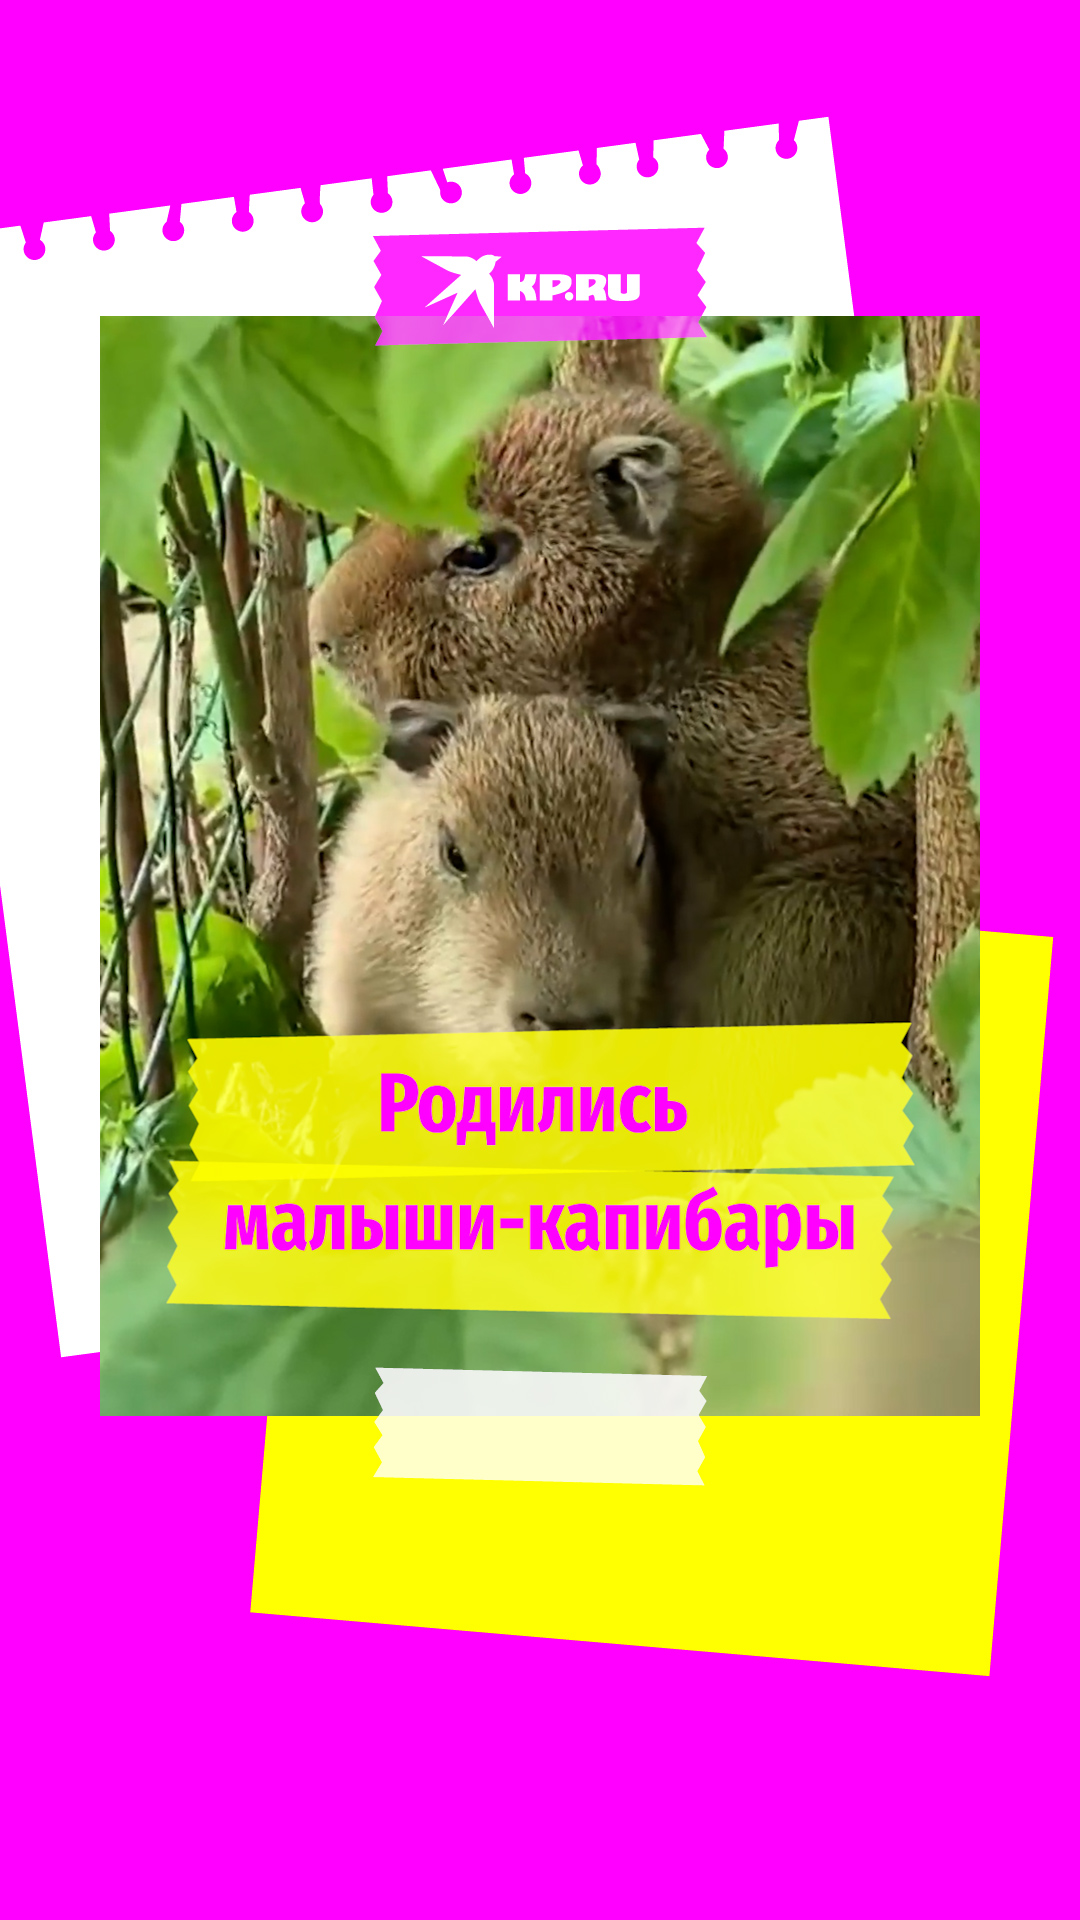 В московском зоопарке родились малыши-капибары